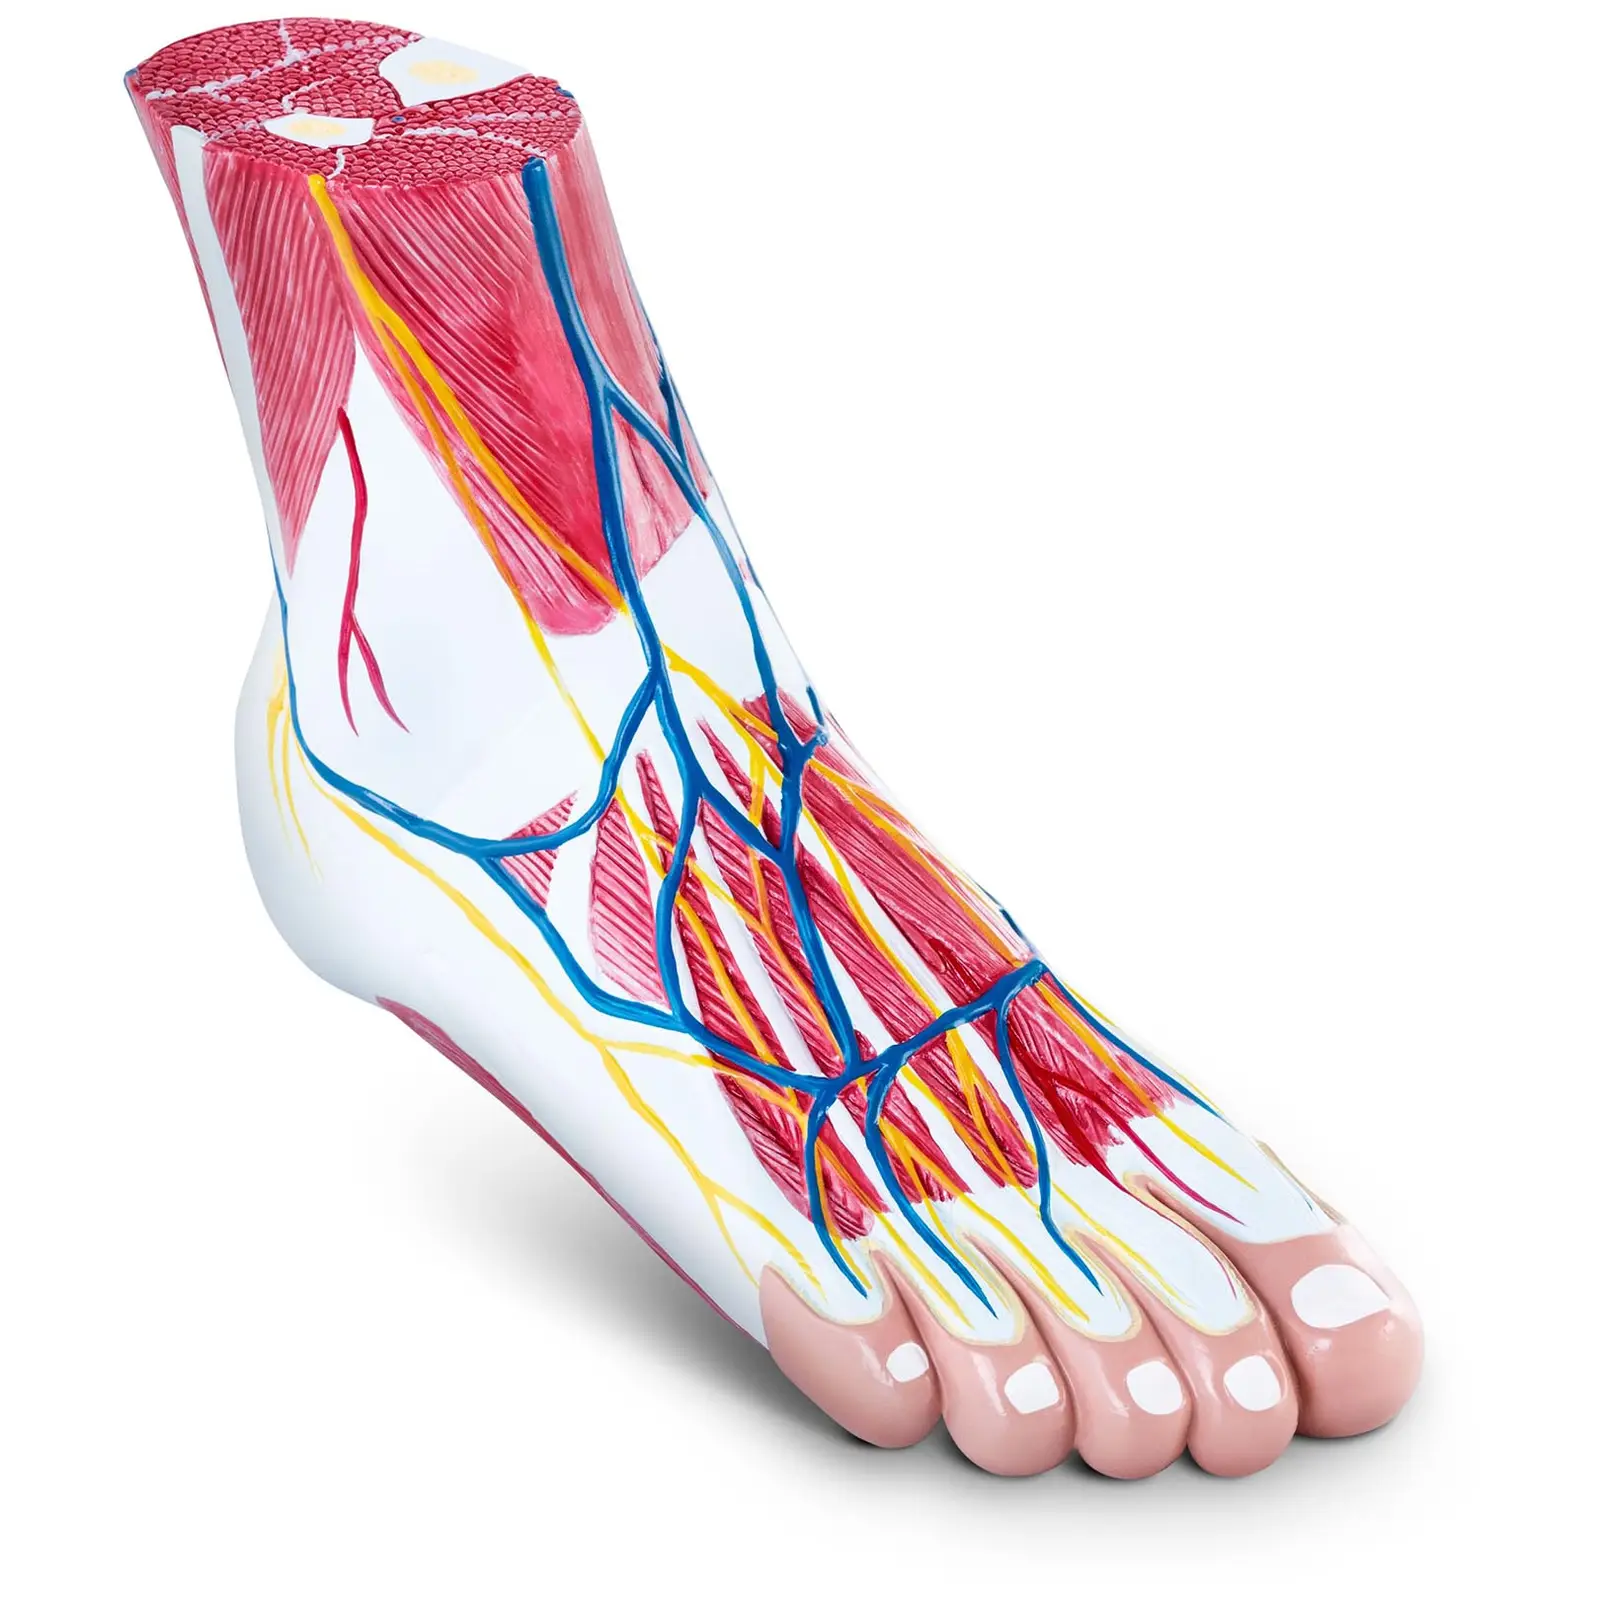 Maquette anatomique des muscles du pied - En 3 parties - Grandeur nature - Dégénérescence musculaire